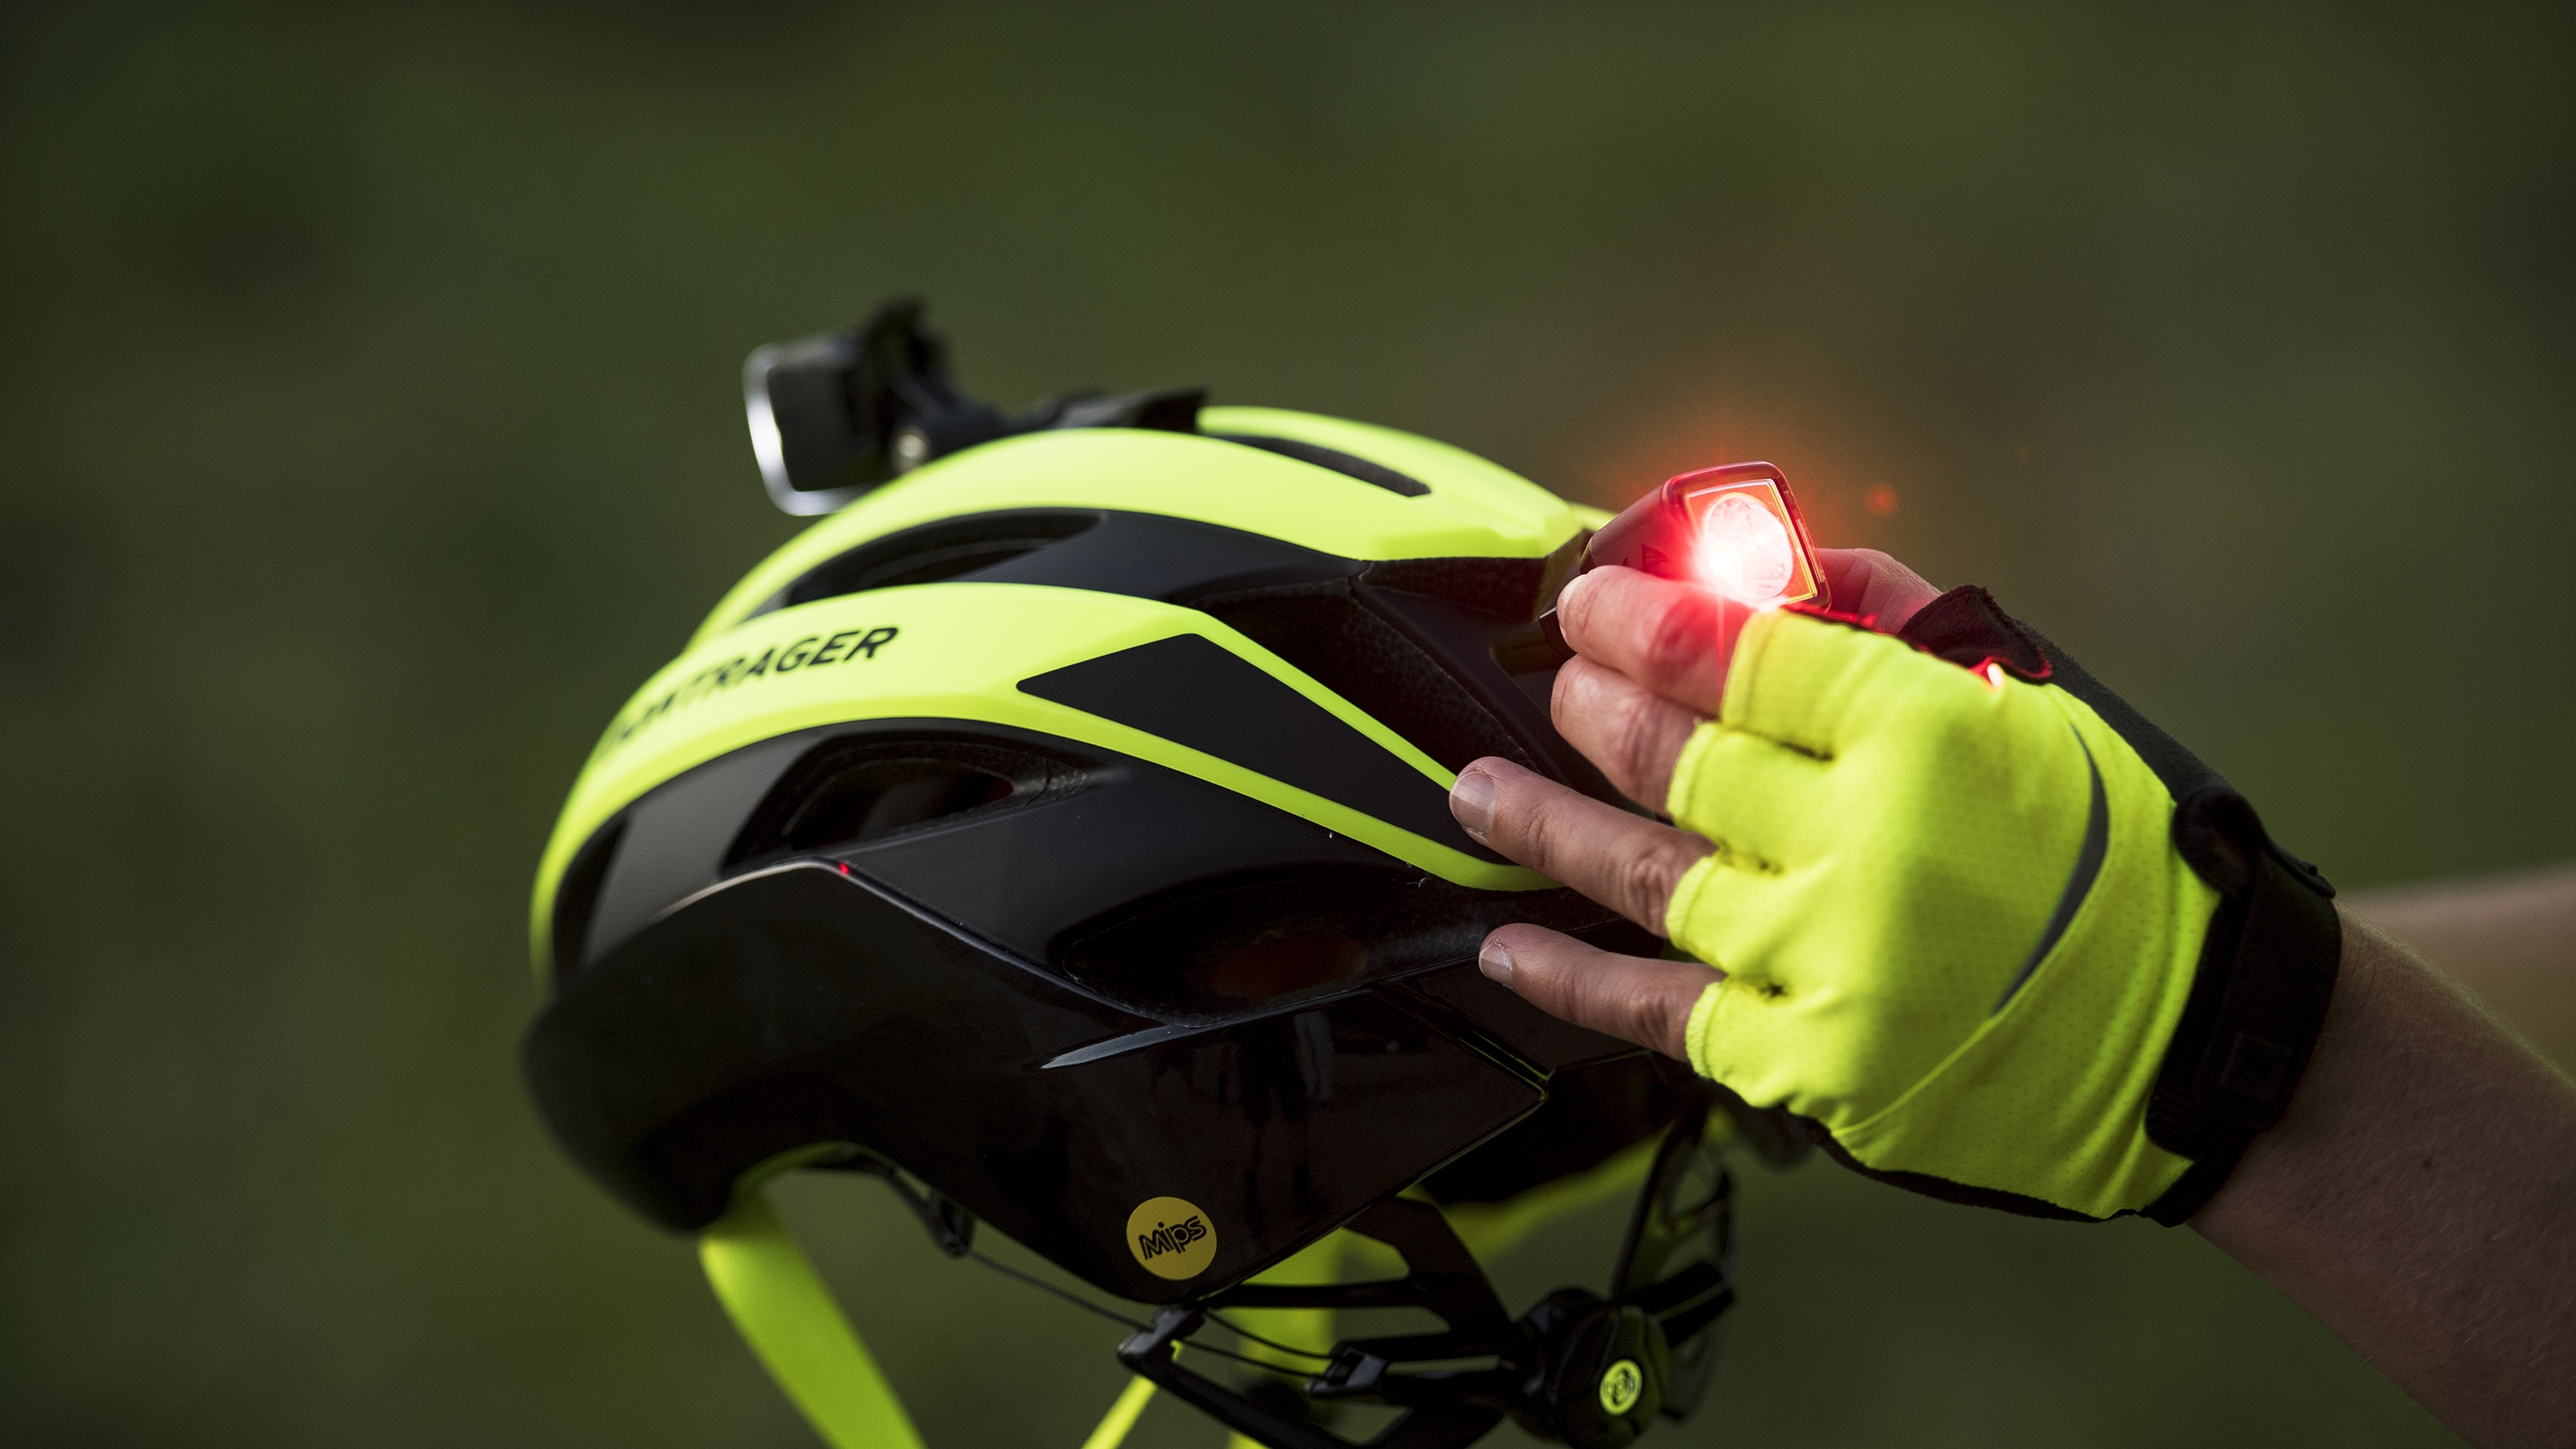 reflective gear for biking